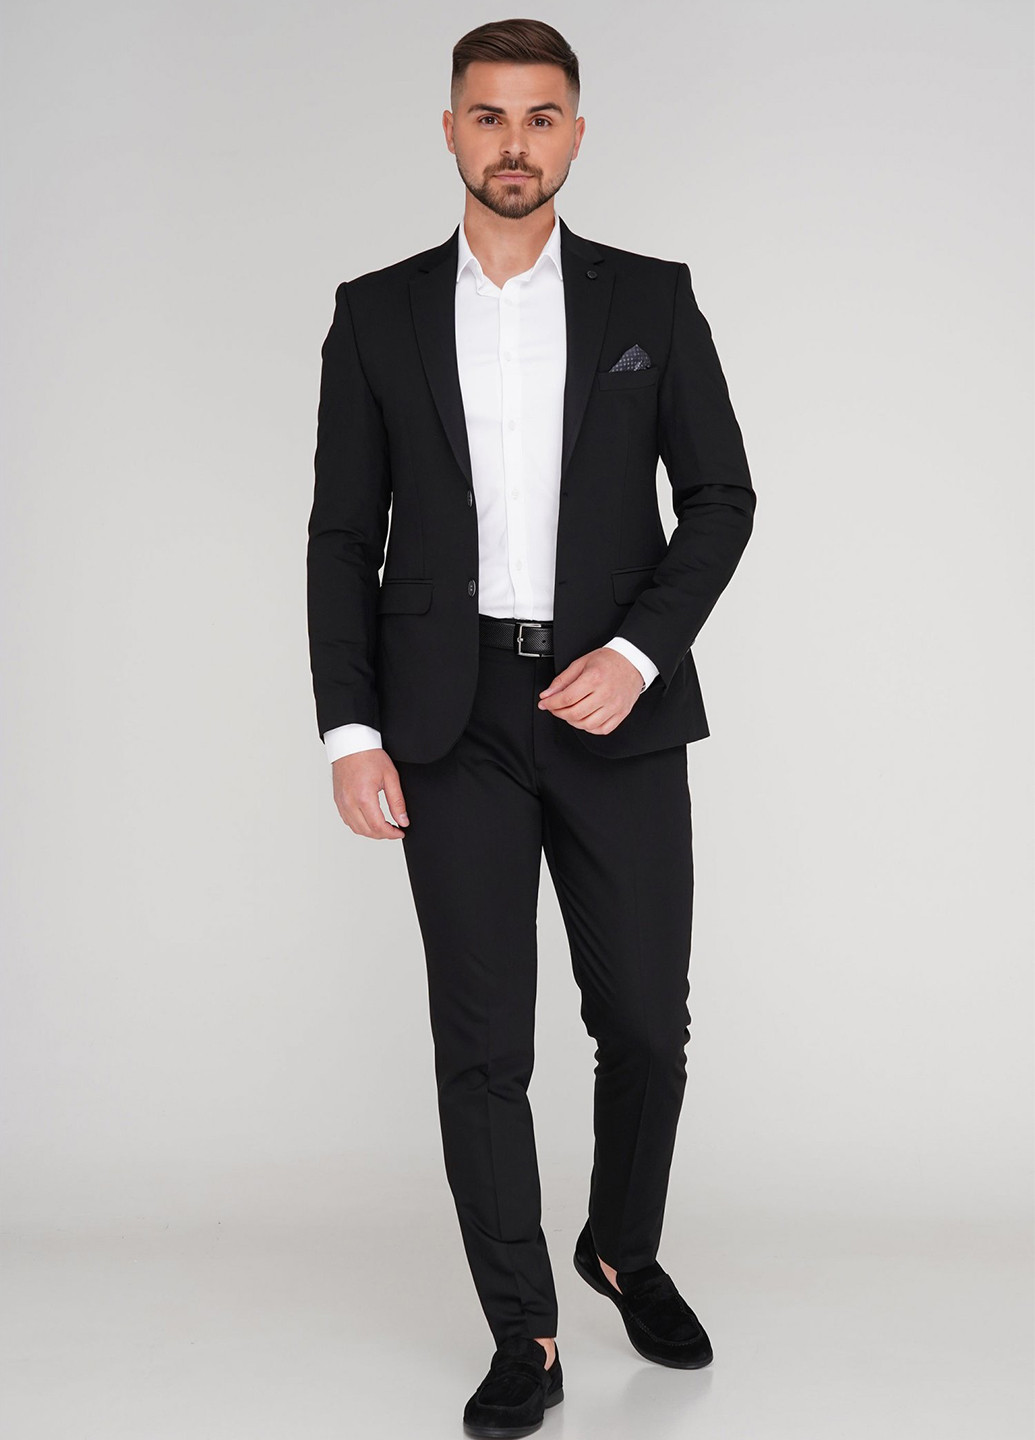 Черный демисезонный костюм (пиджак, брюки) брючный Trend Collection